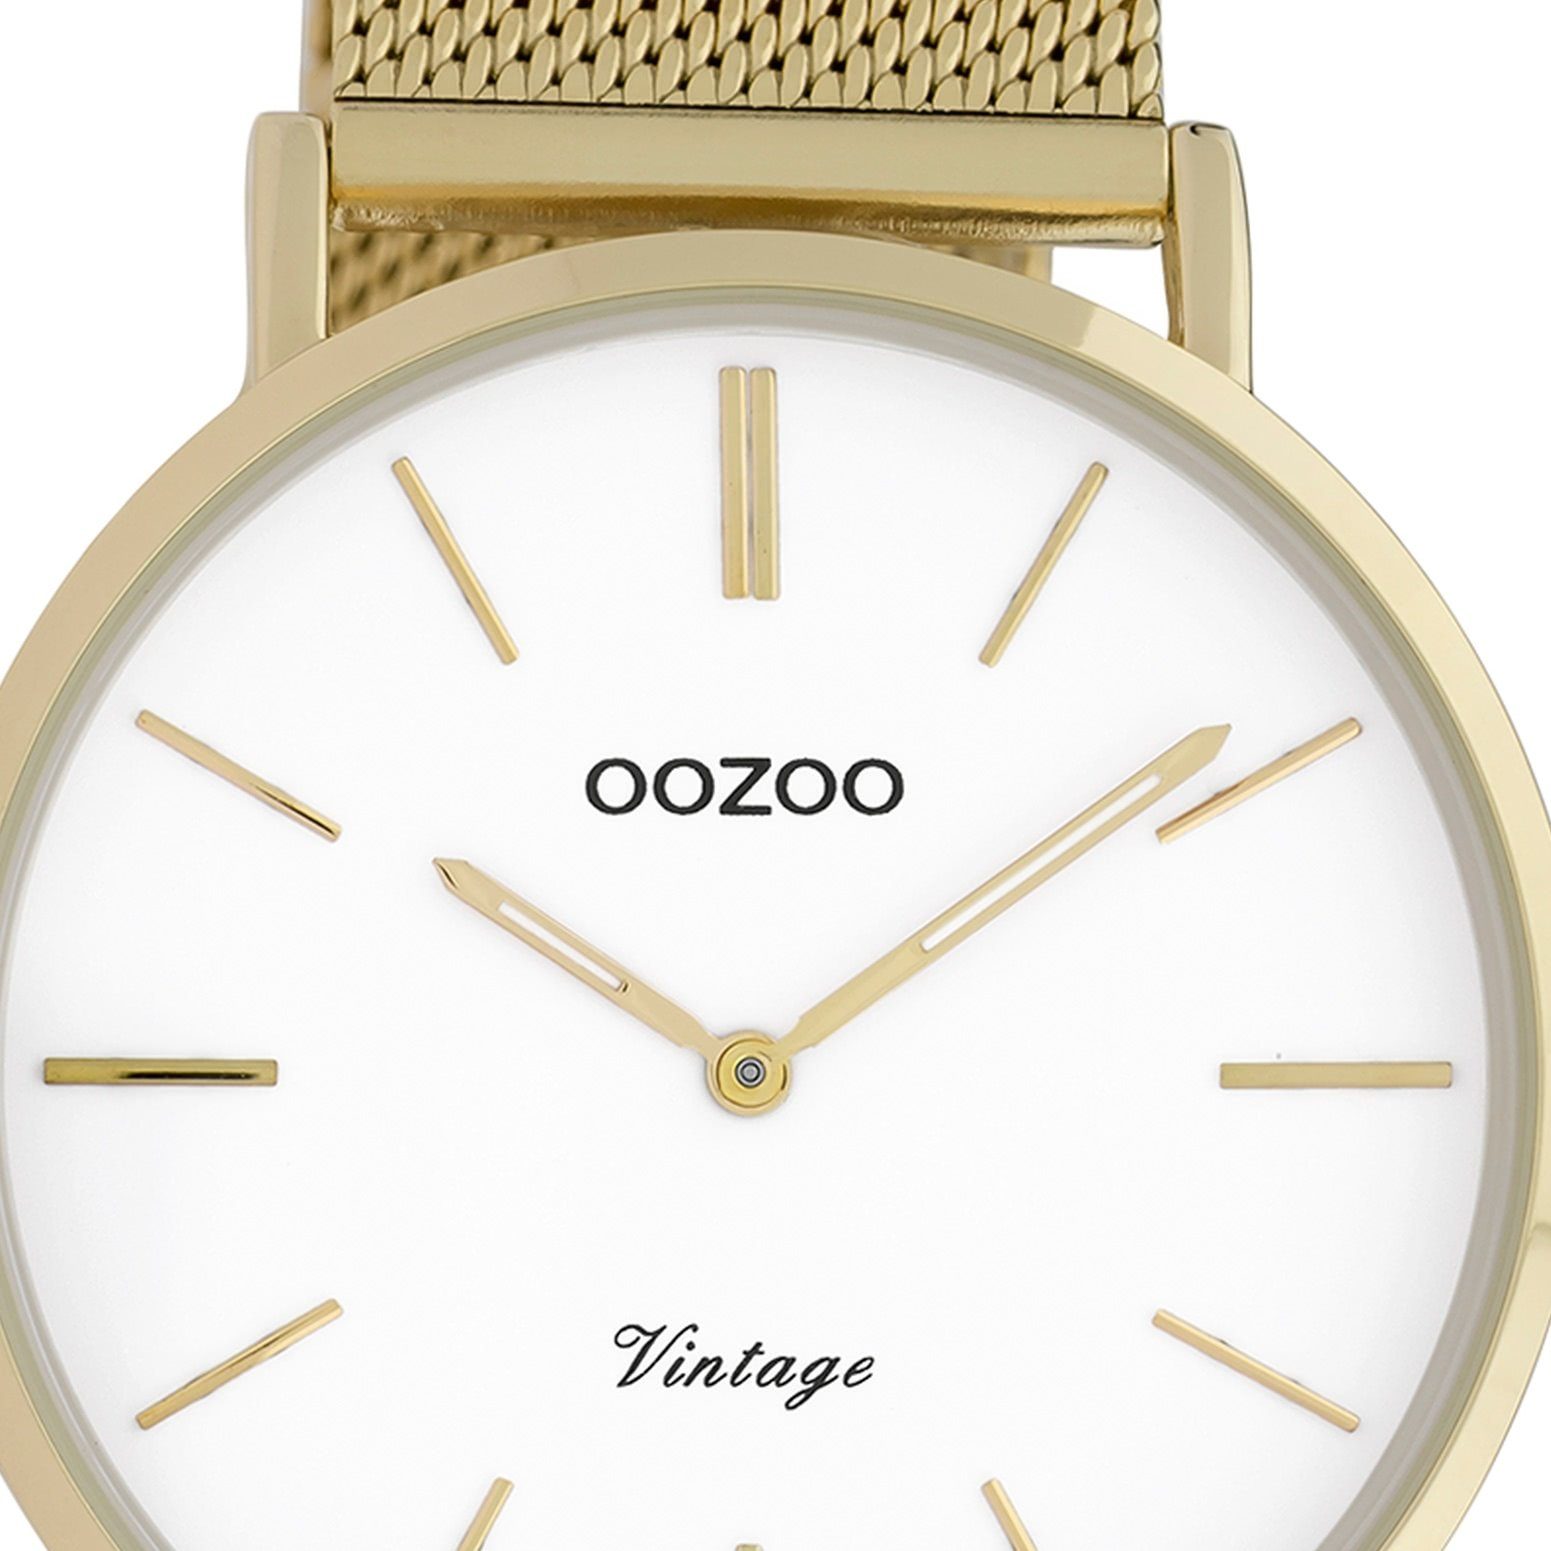 Oozoo gold rund, Edelstahlarmband, OOZOO Quarzuhr Fashion-Style Herrenuhr Vintage, (ca. Herren-Uhr groß 40mm)